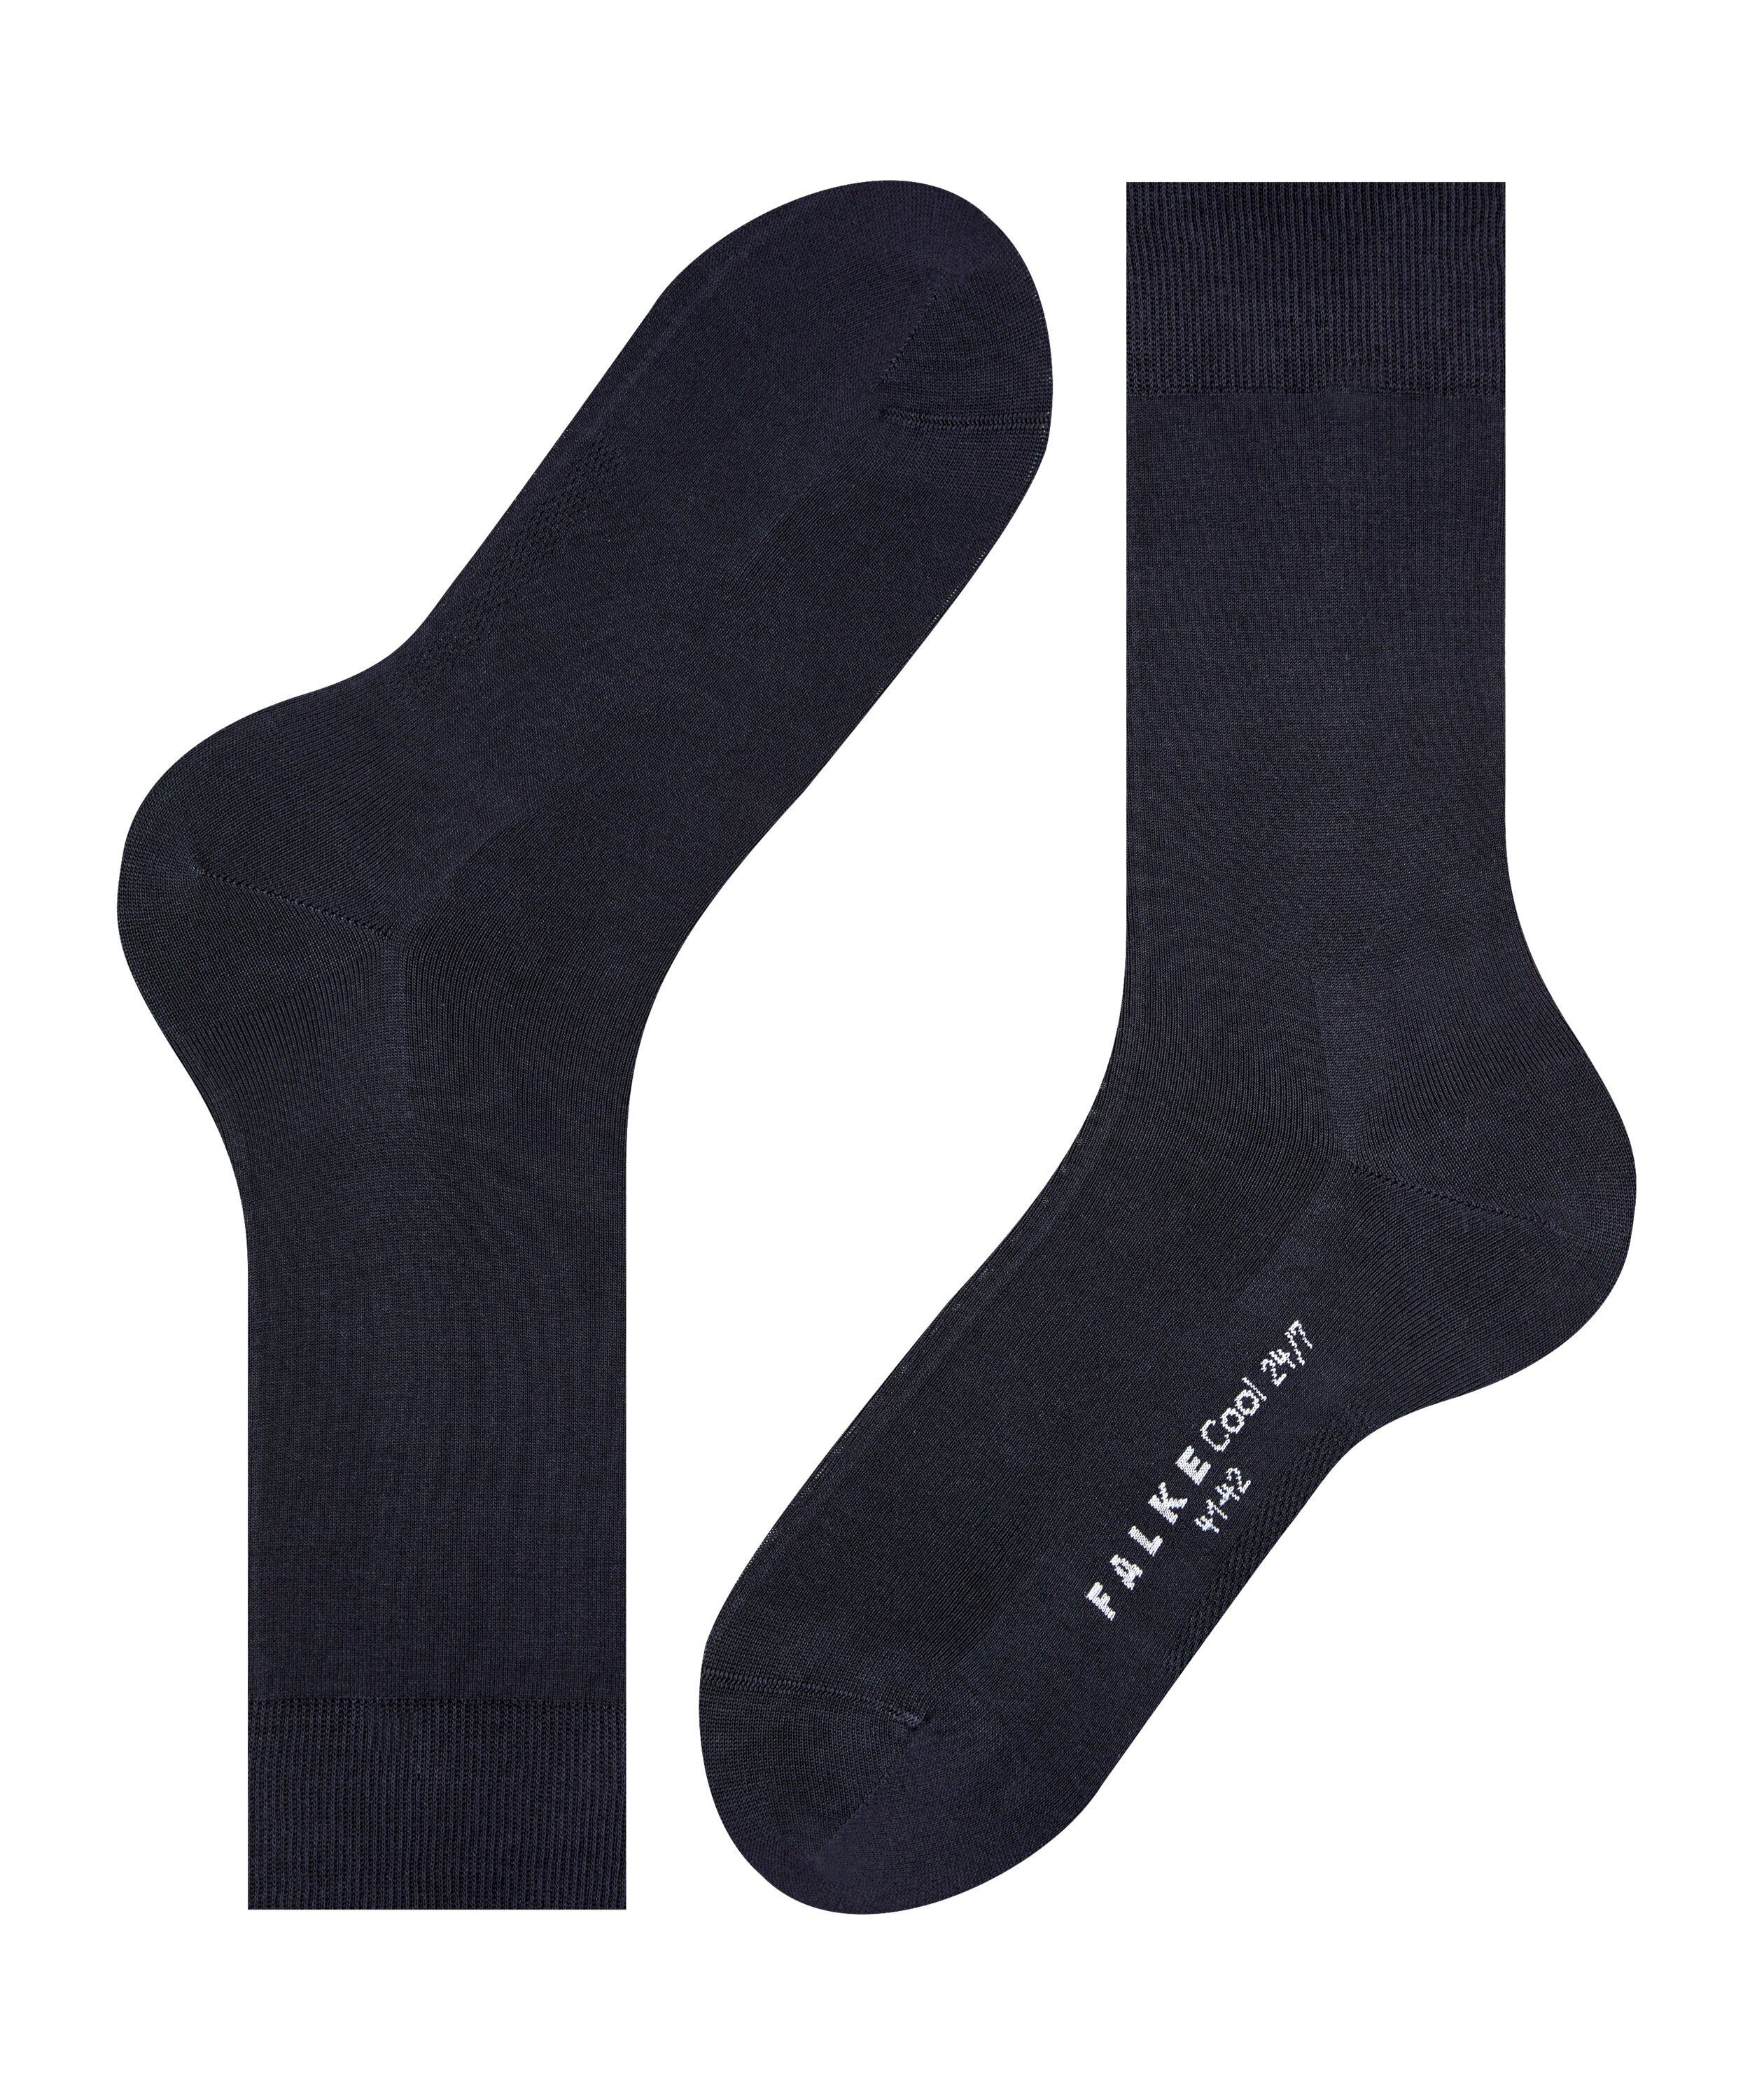 FALKE Socken Cool 24/7 dark (1-Paar) (6370) navy